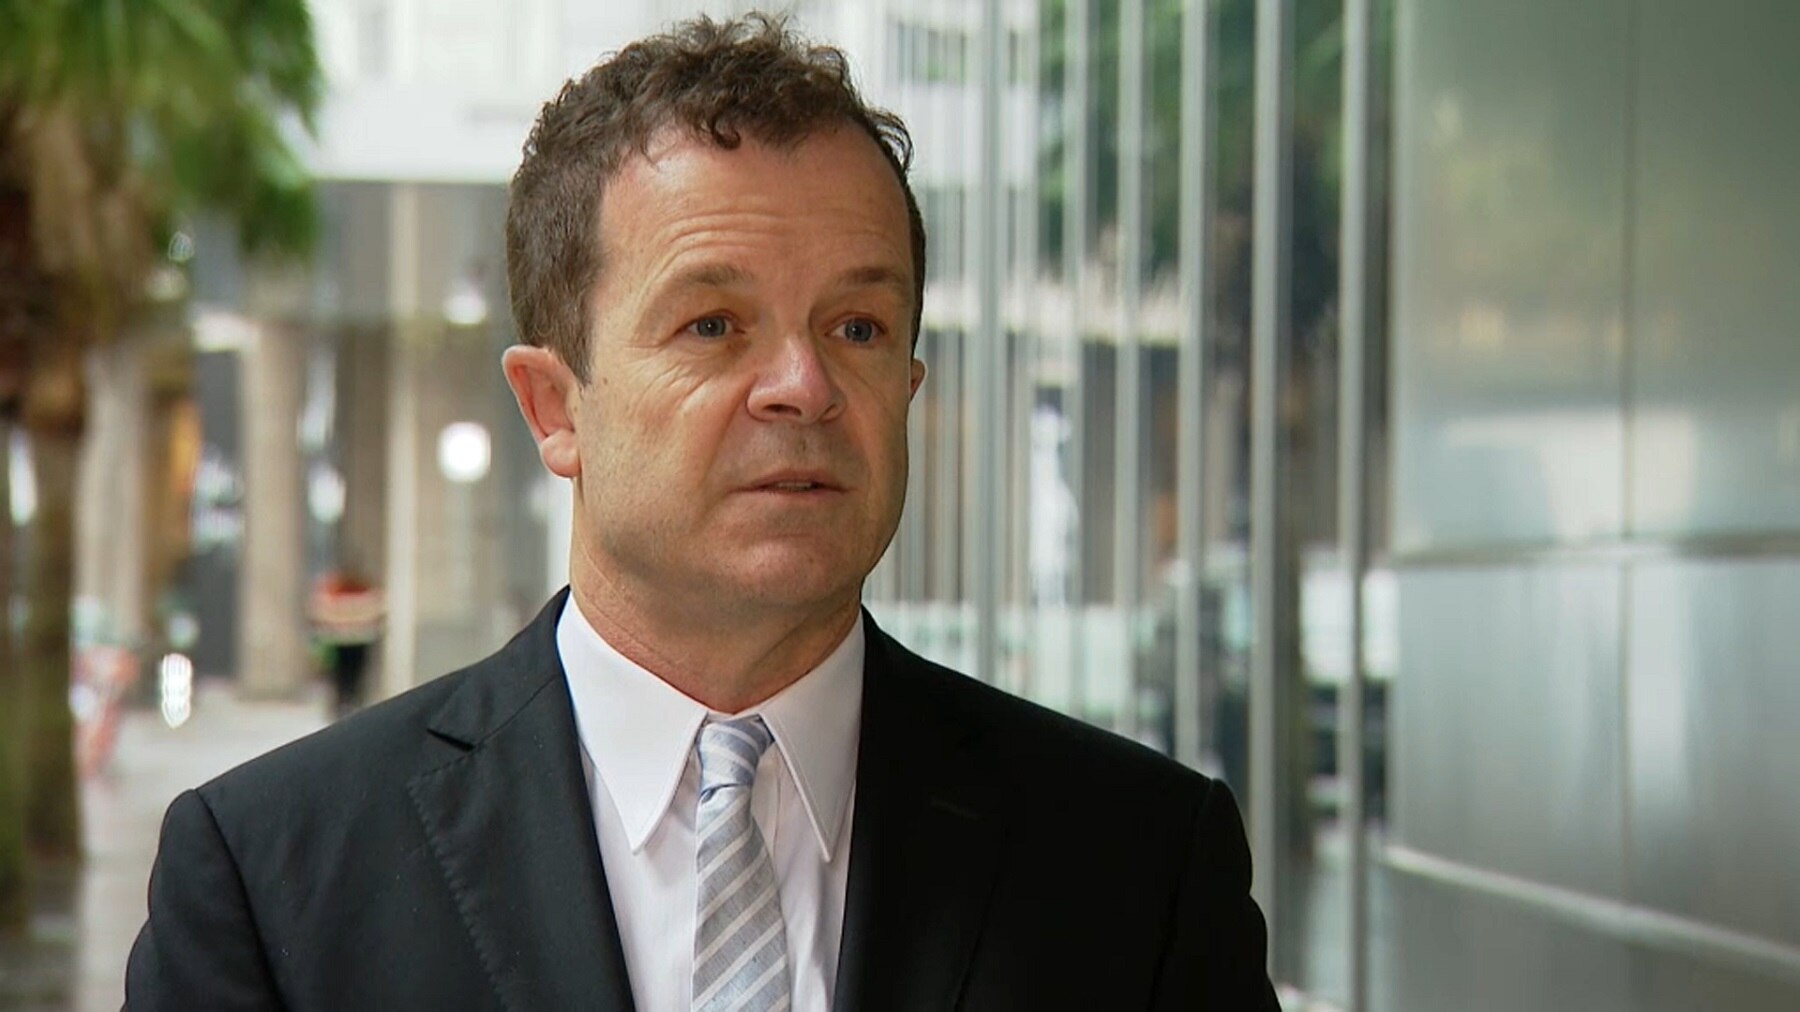 NSW Attorney General Mark Speakman